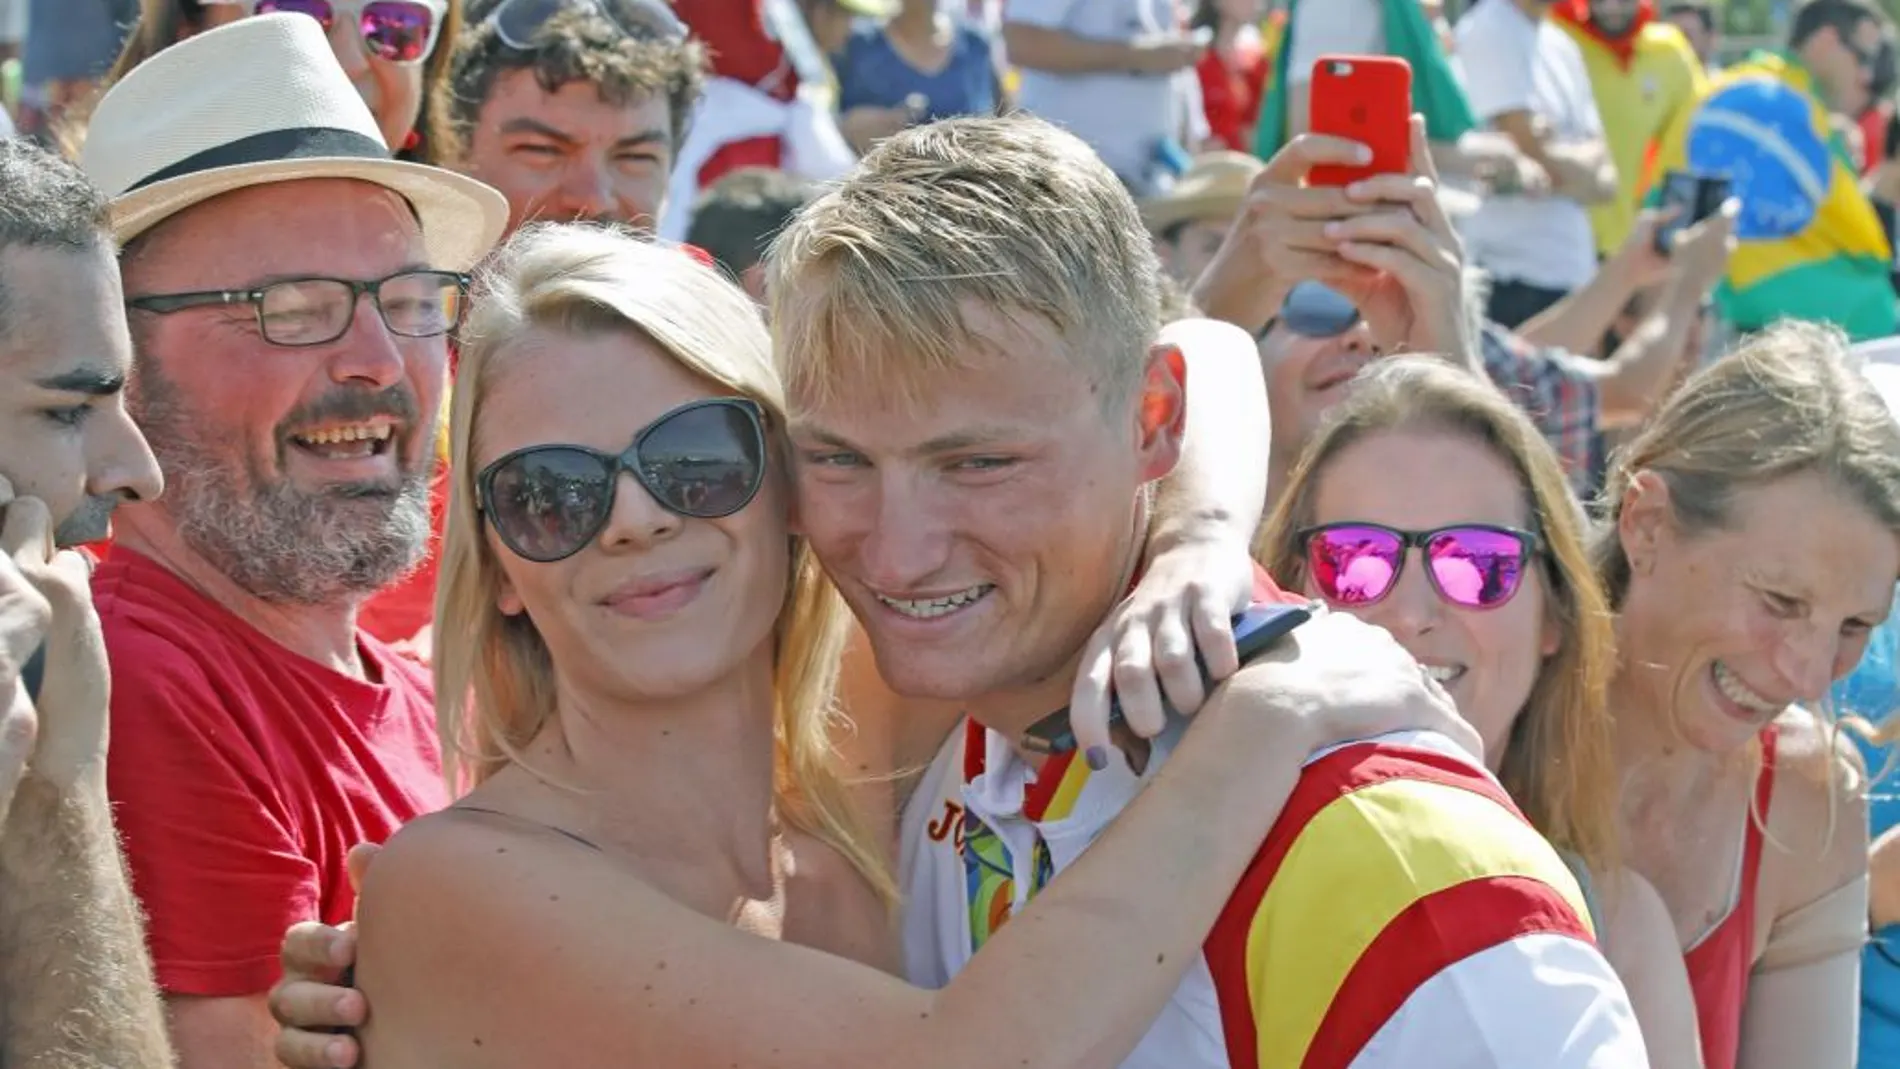 El español Marcus Cooper Walz posa con su novia tras ganar el oro.